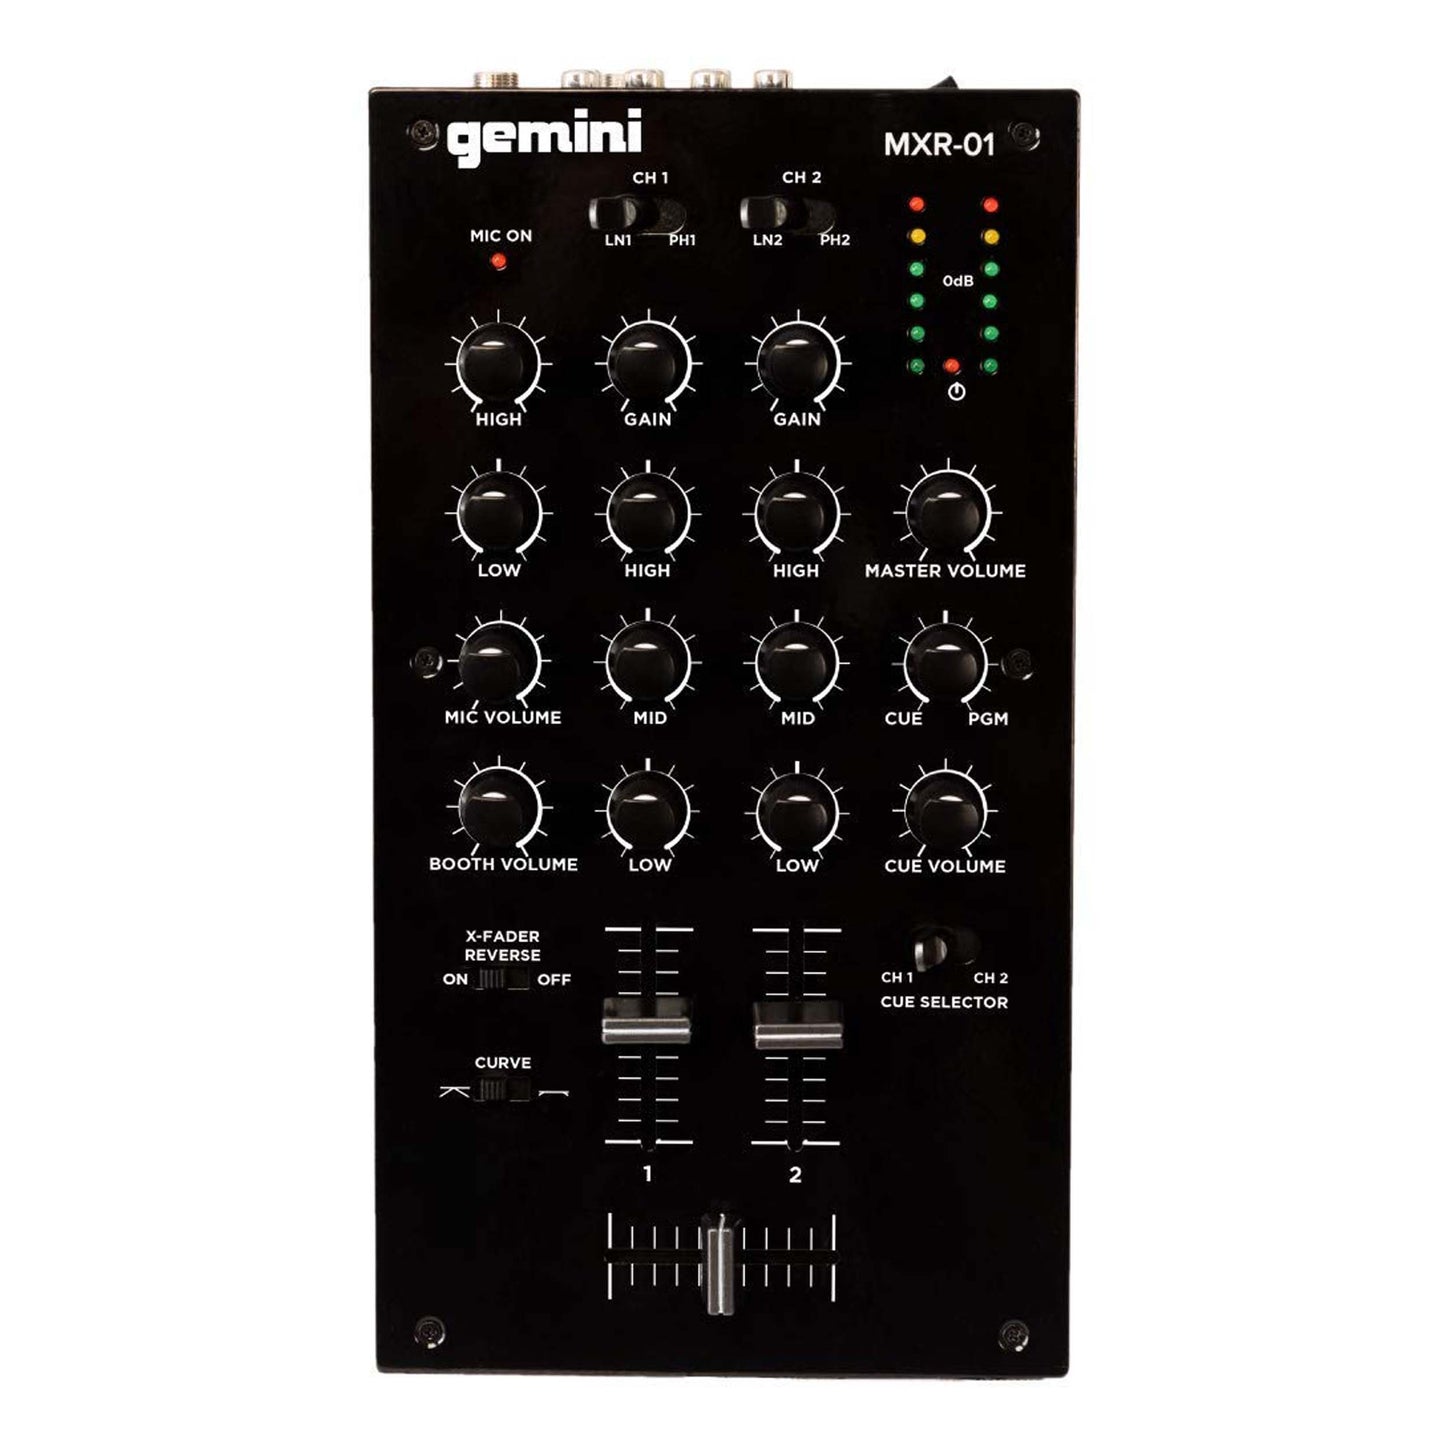 Gemini MXR-01 2-Channel DJ Mixer